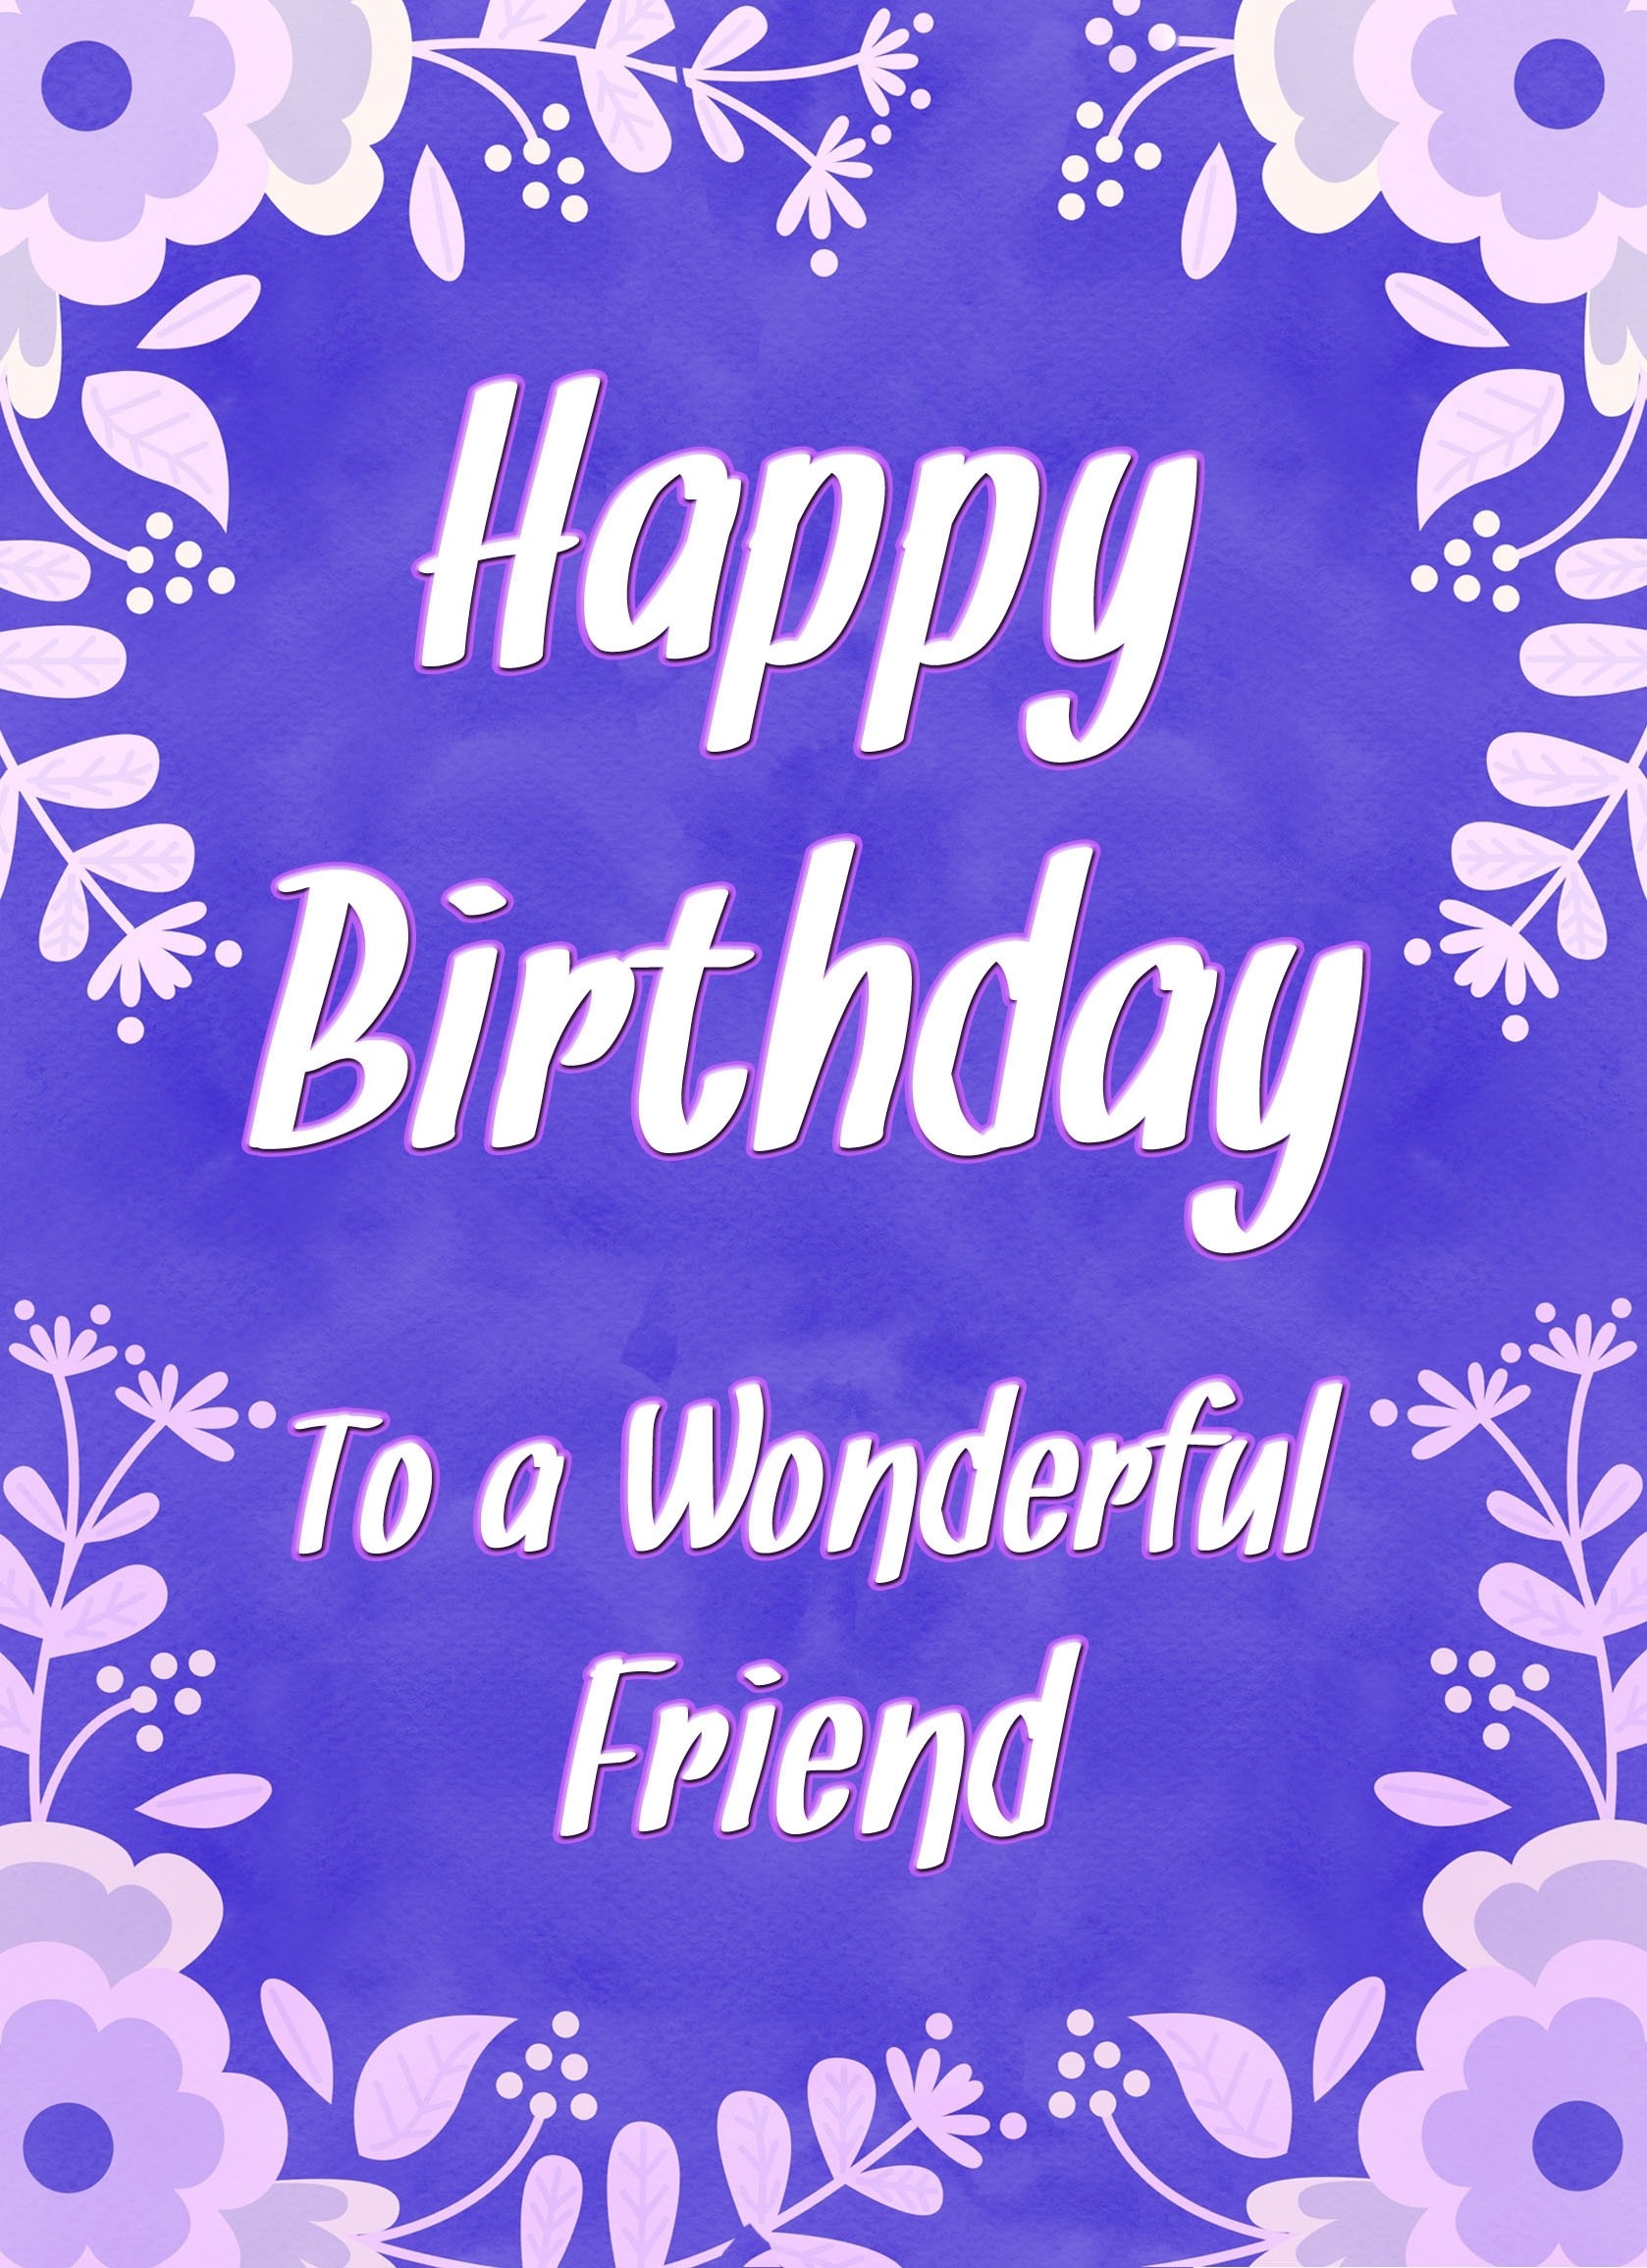 Birthday Card For Wonderful Friend (Purple Border)